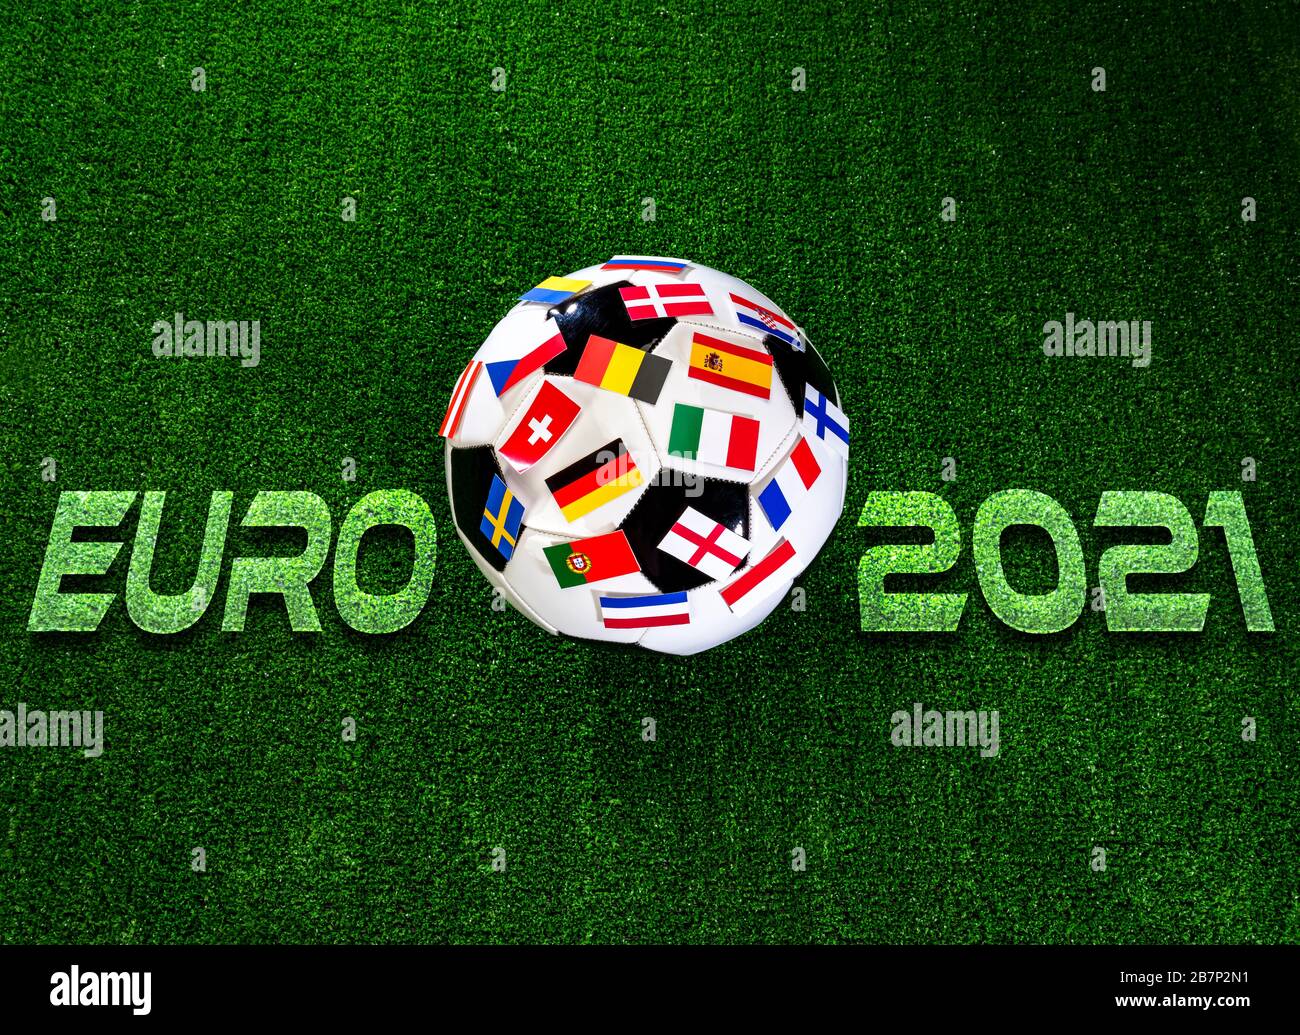 Championnat de football 2021 euros. Ballon de football avec drapeaux des pays européens Banque D'Images